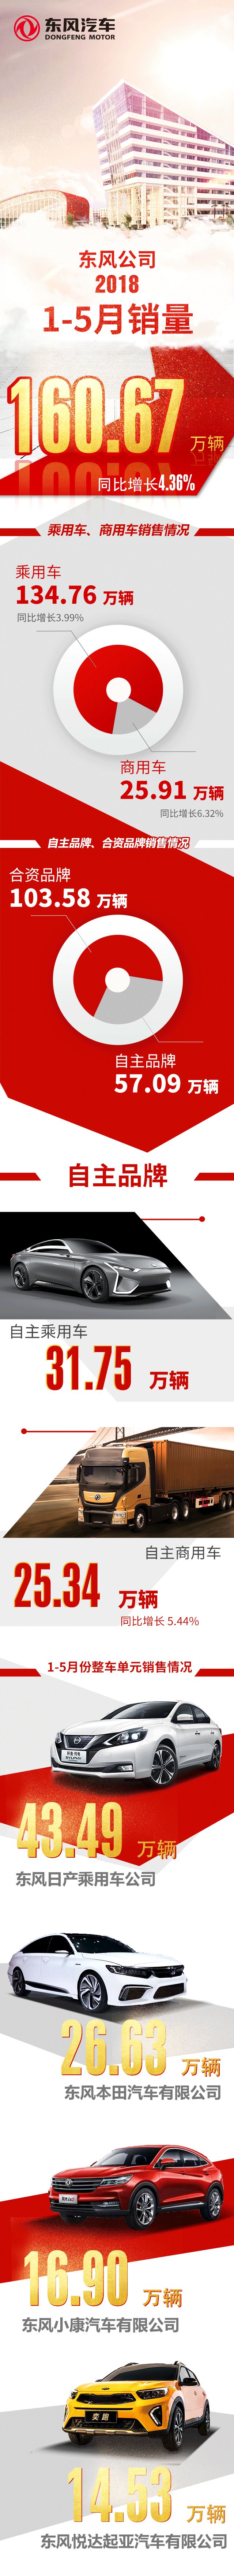 东风汽车集团有限公司1-5月累计销售汽车160.67万辆.jpg